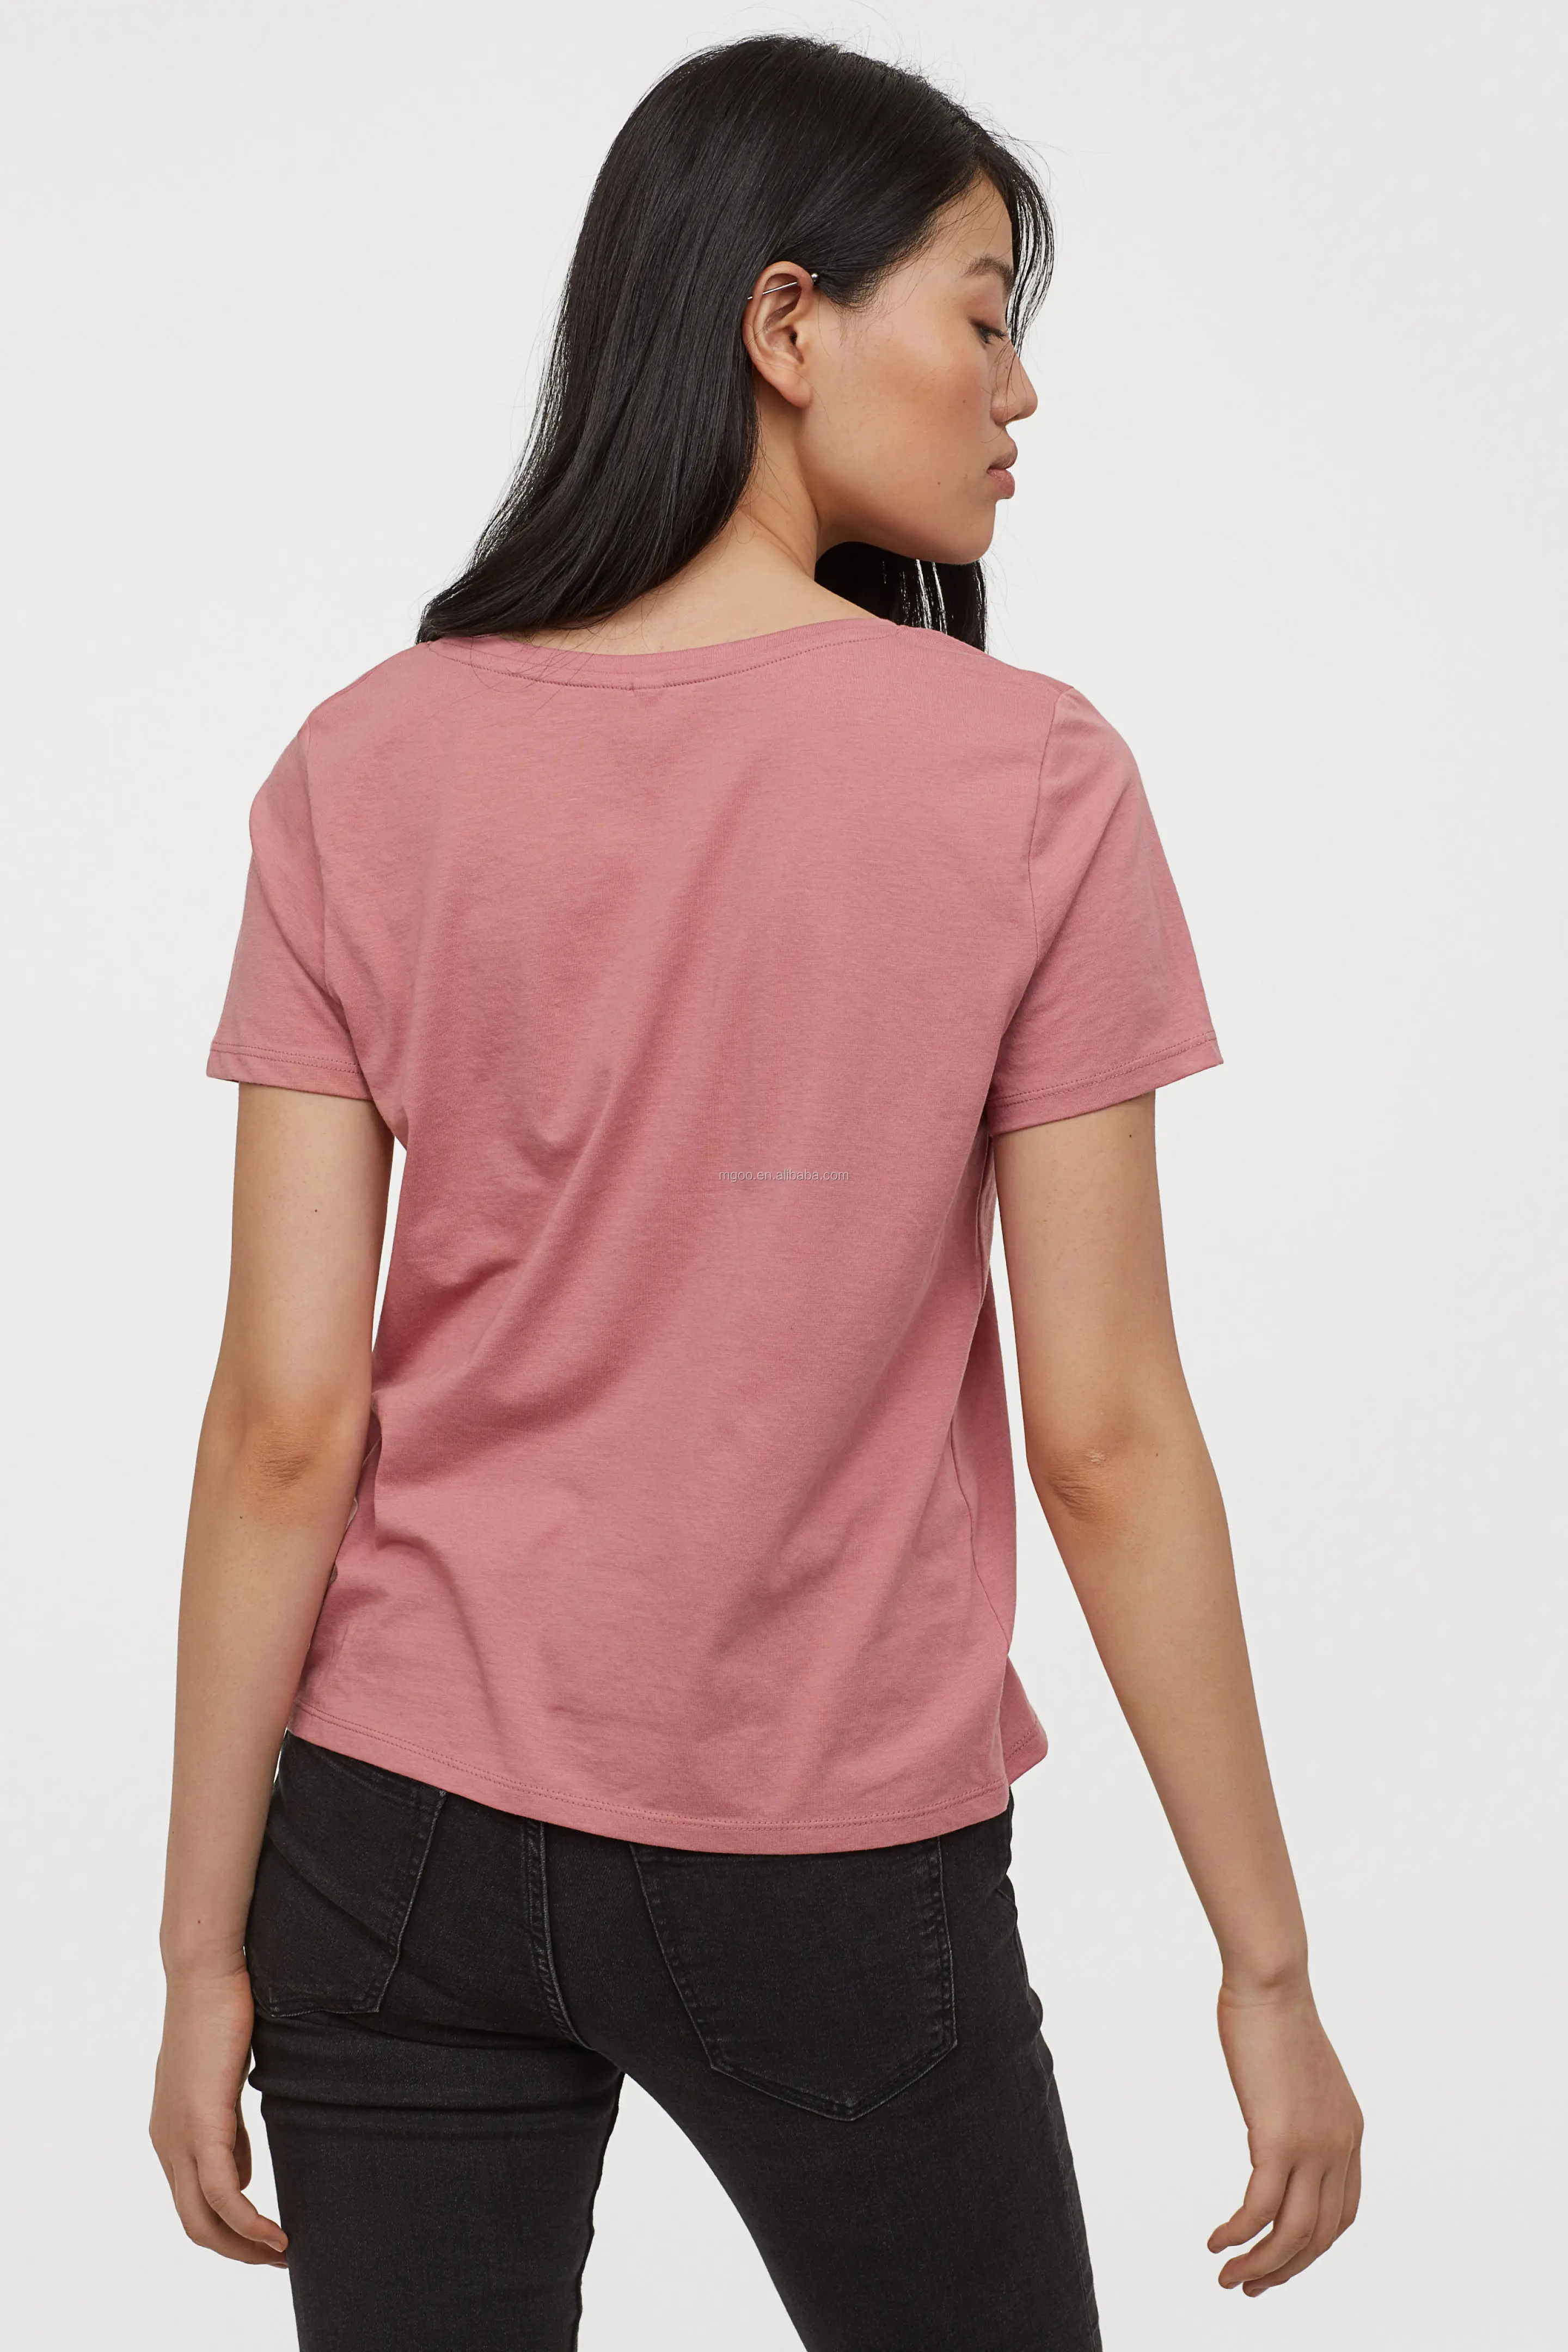 mgoo 便宜 v领基本平原粉红色 t恤为妇女短袖竹棉 t恤